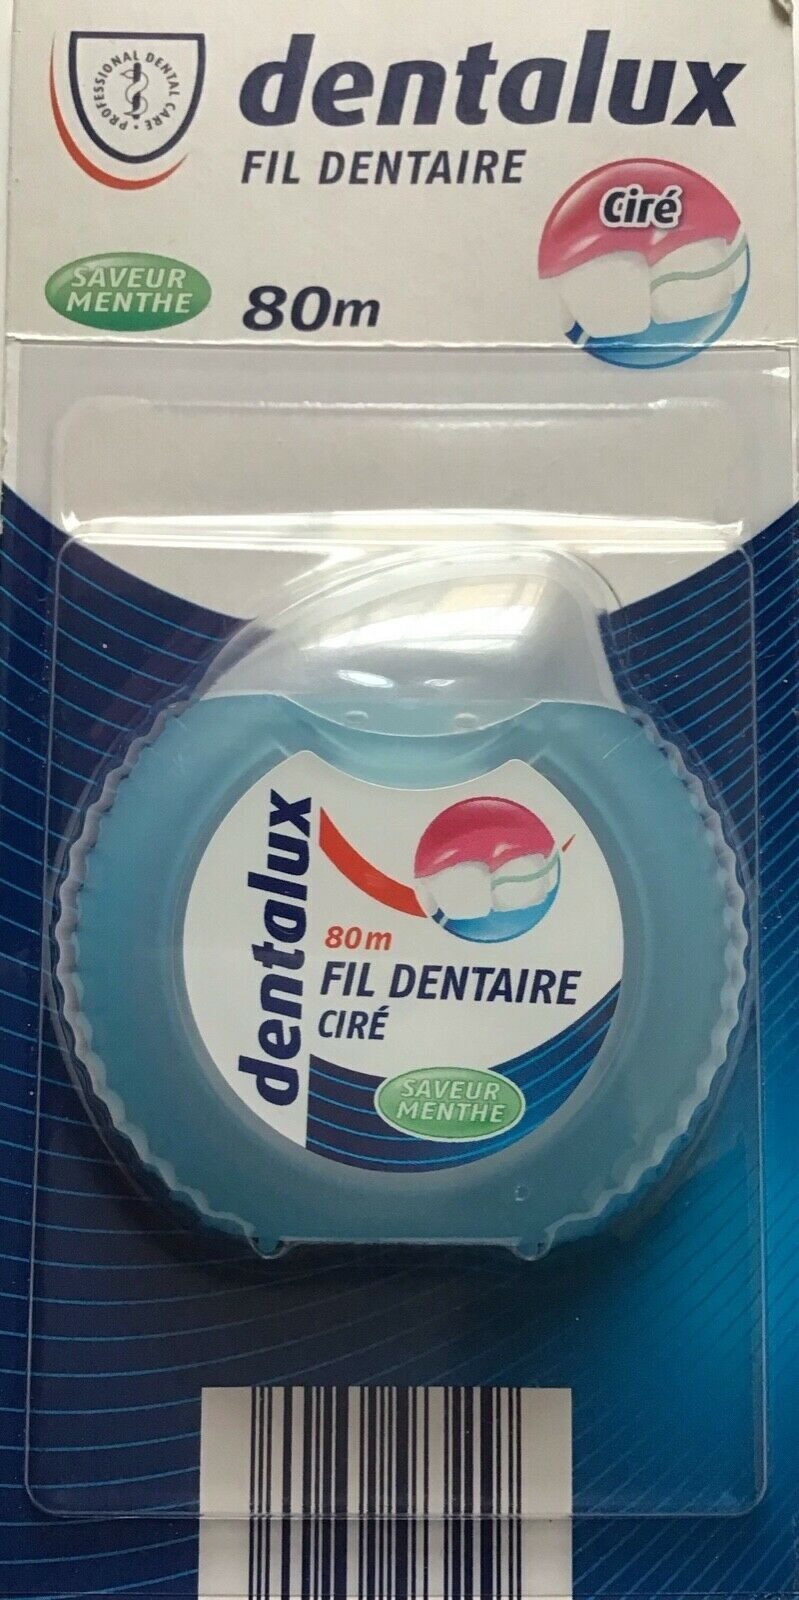 Fil dentaire ciré - Product - fr